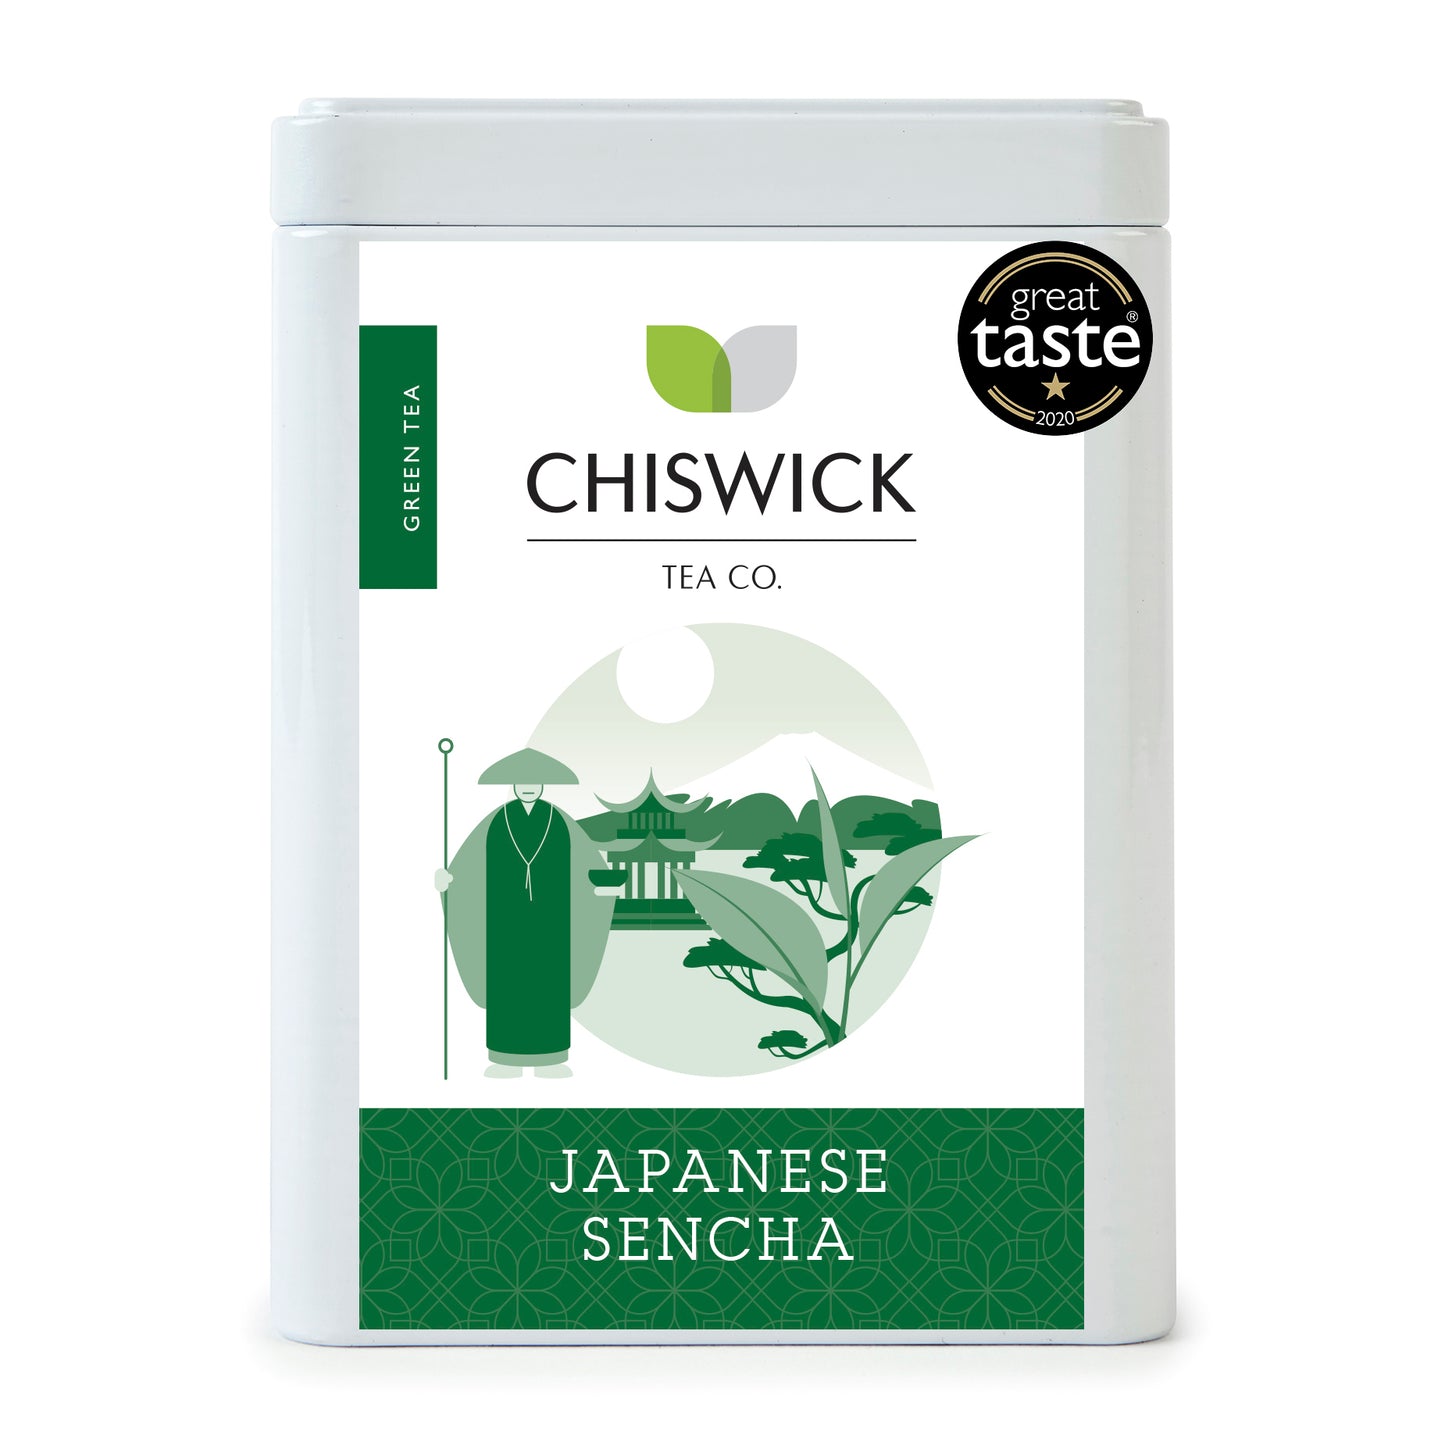 Japanese Sencha